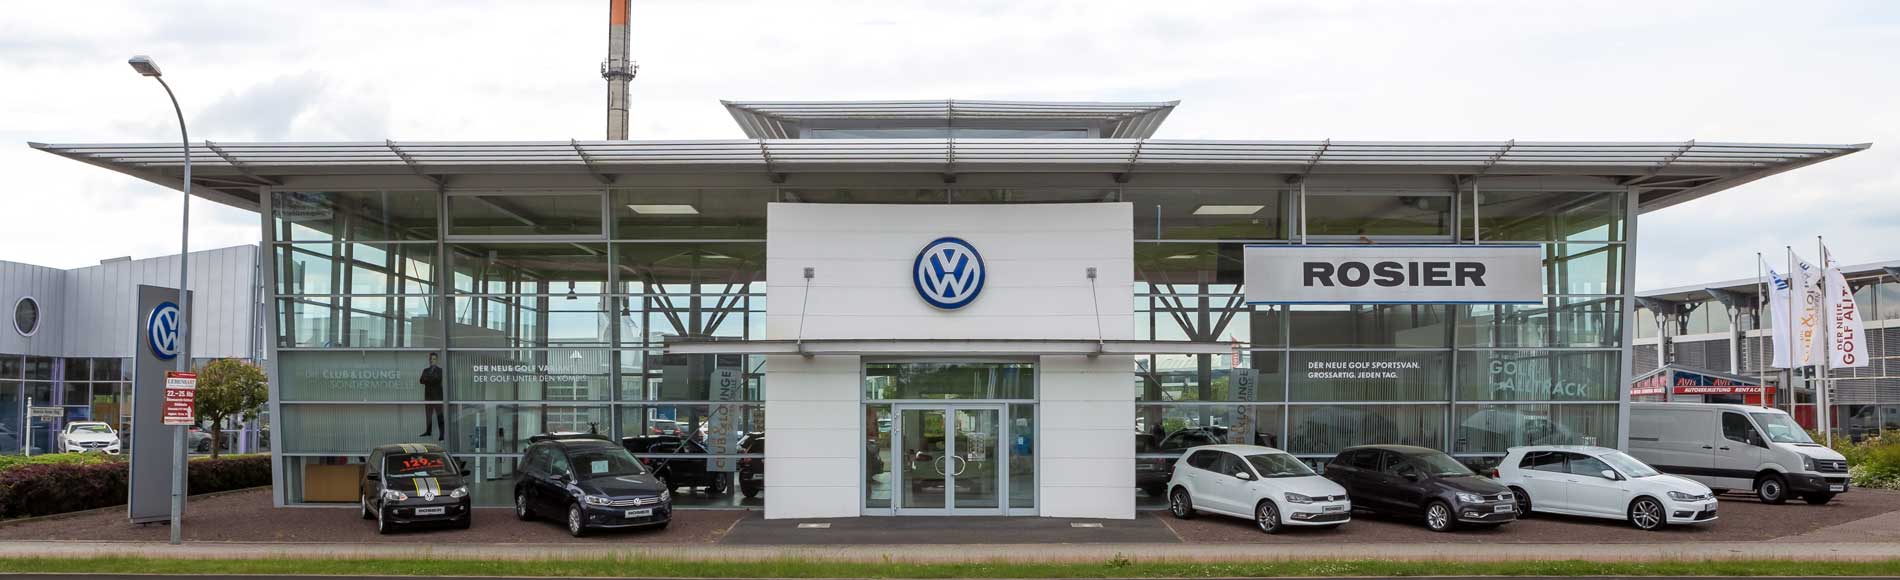 VW Rosier in Stendal